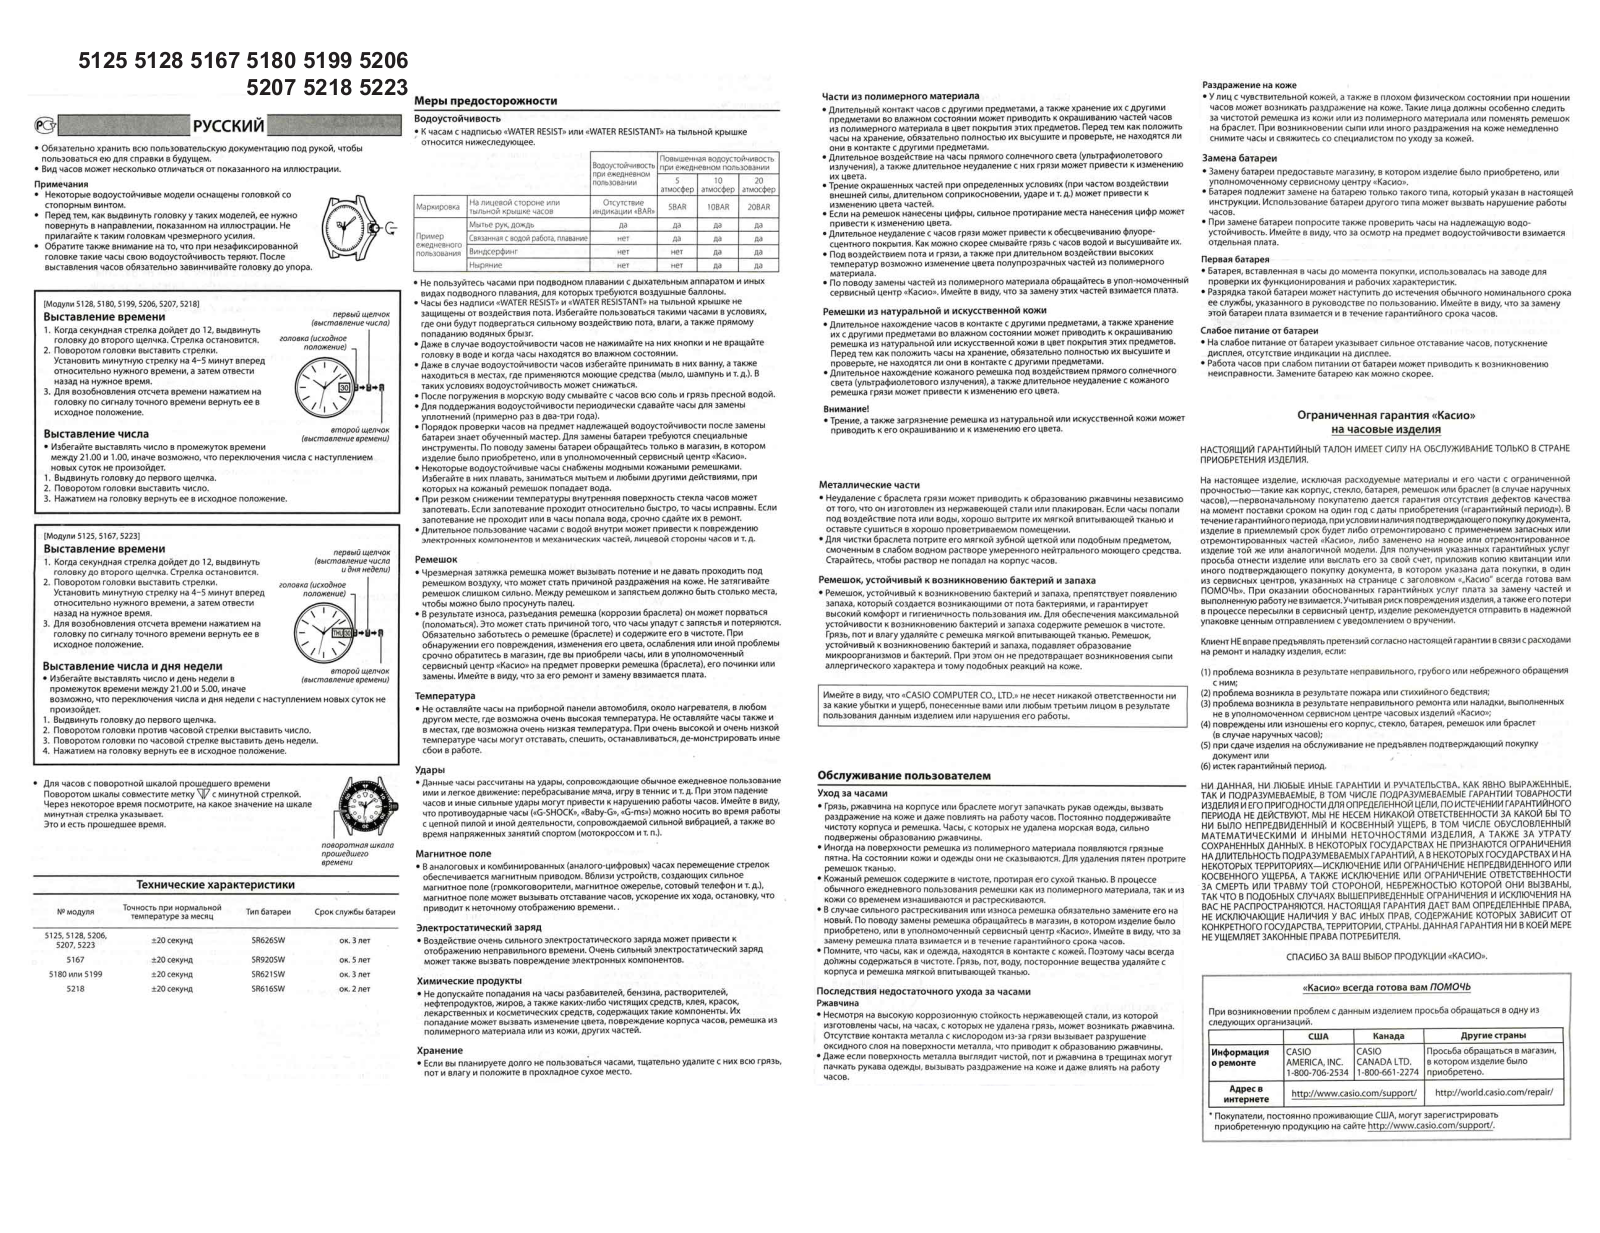 CASIO EFR-100 User Manual